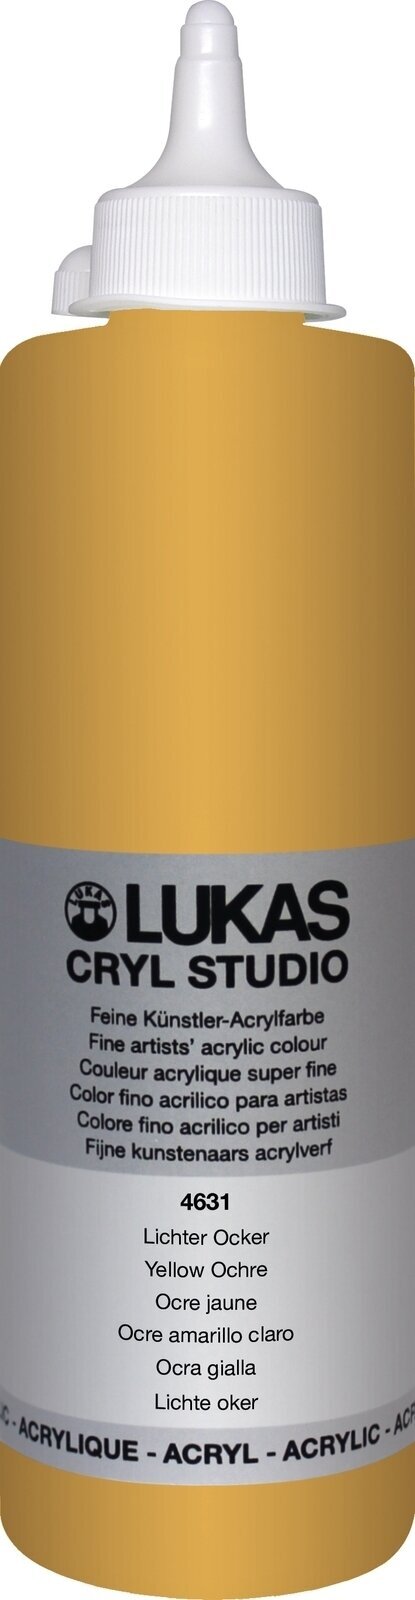 Akrylfärg Lukas Cryl Studio Akrylfärg 500 ml Yellow Ochre